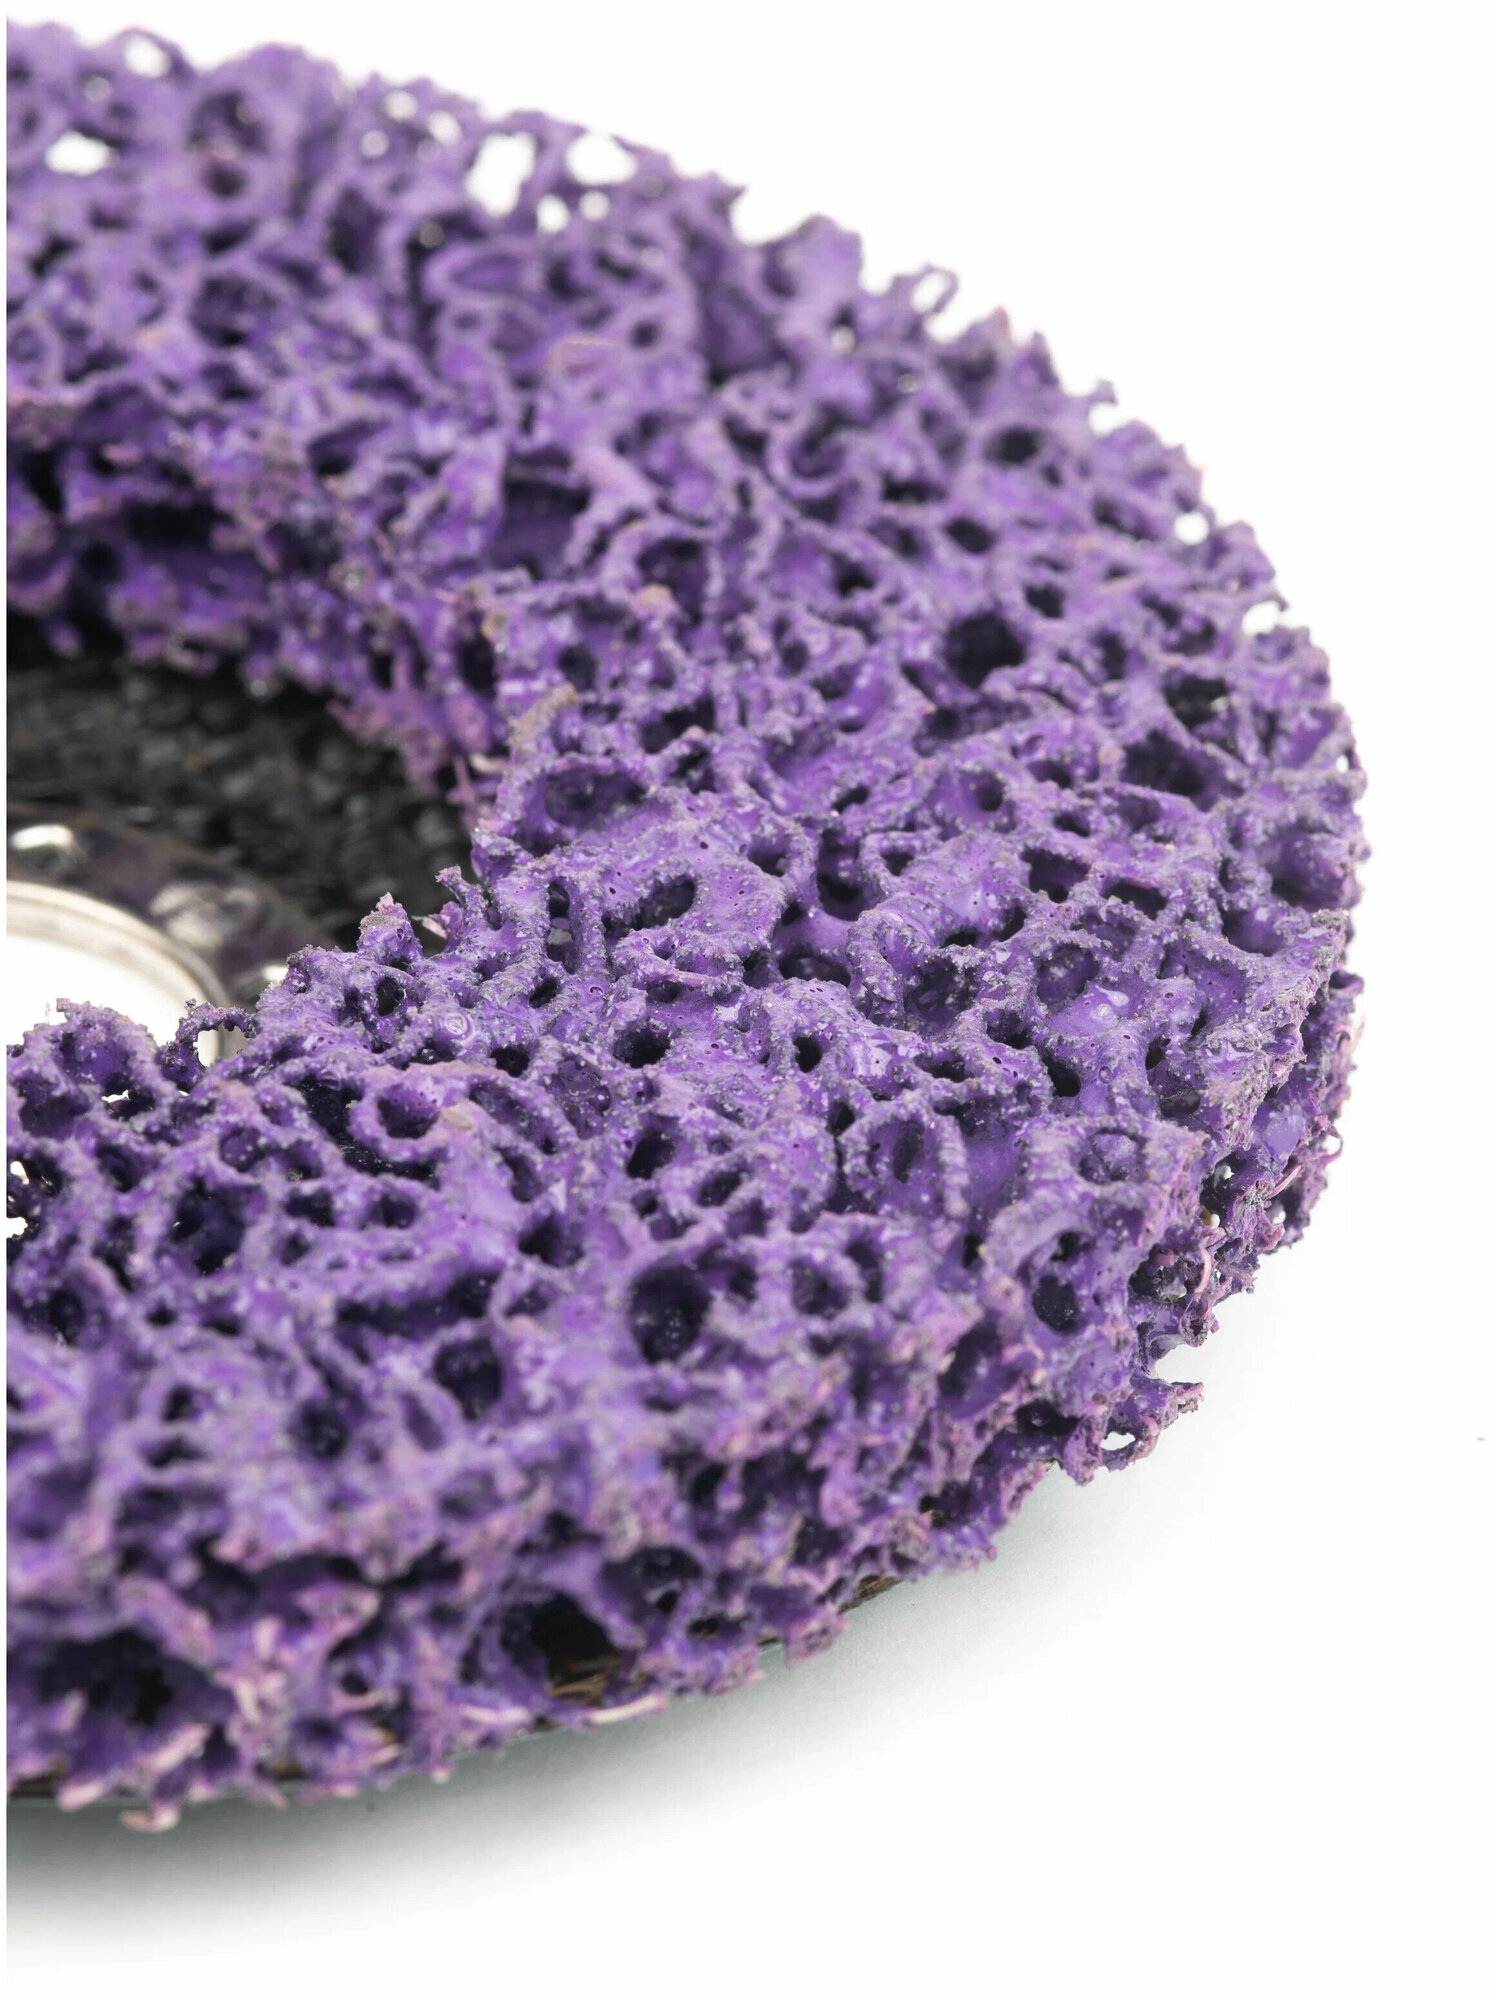 Зачистной диск Стронг коралловый фиолетовый для УШМ мягкой жесткости 125мм